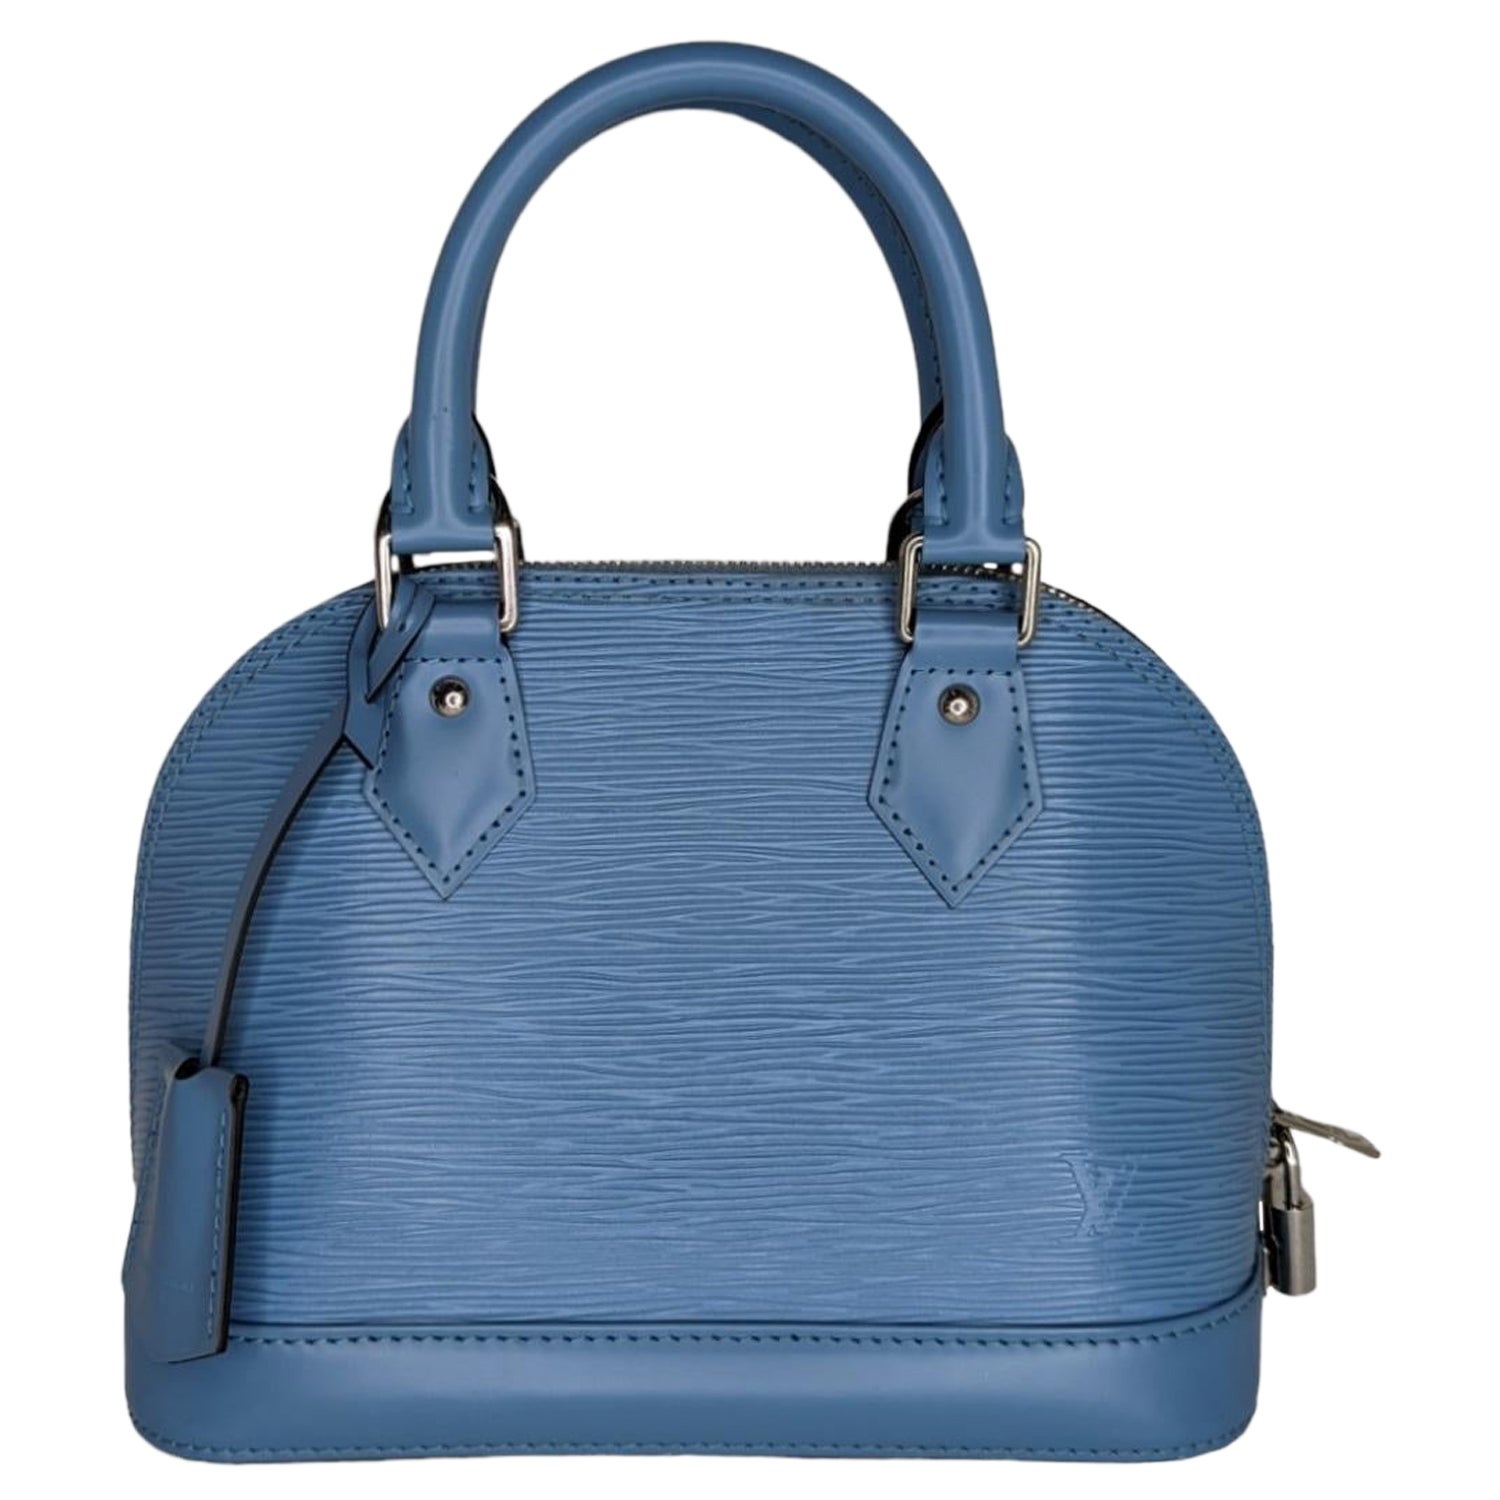 Louis Vuitton Blue Epi Leather Speedy 35 Boston Bag 86lv221s For 